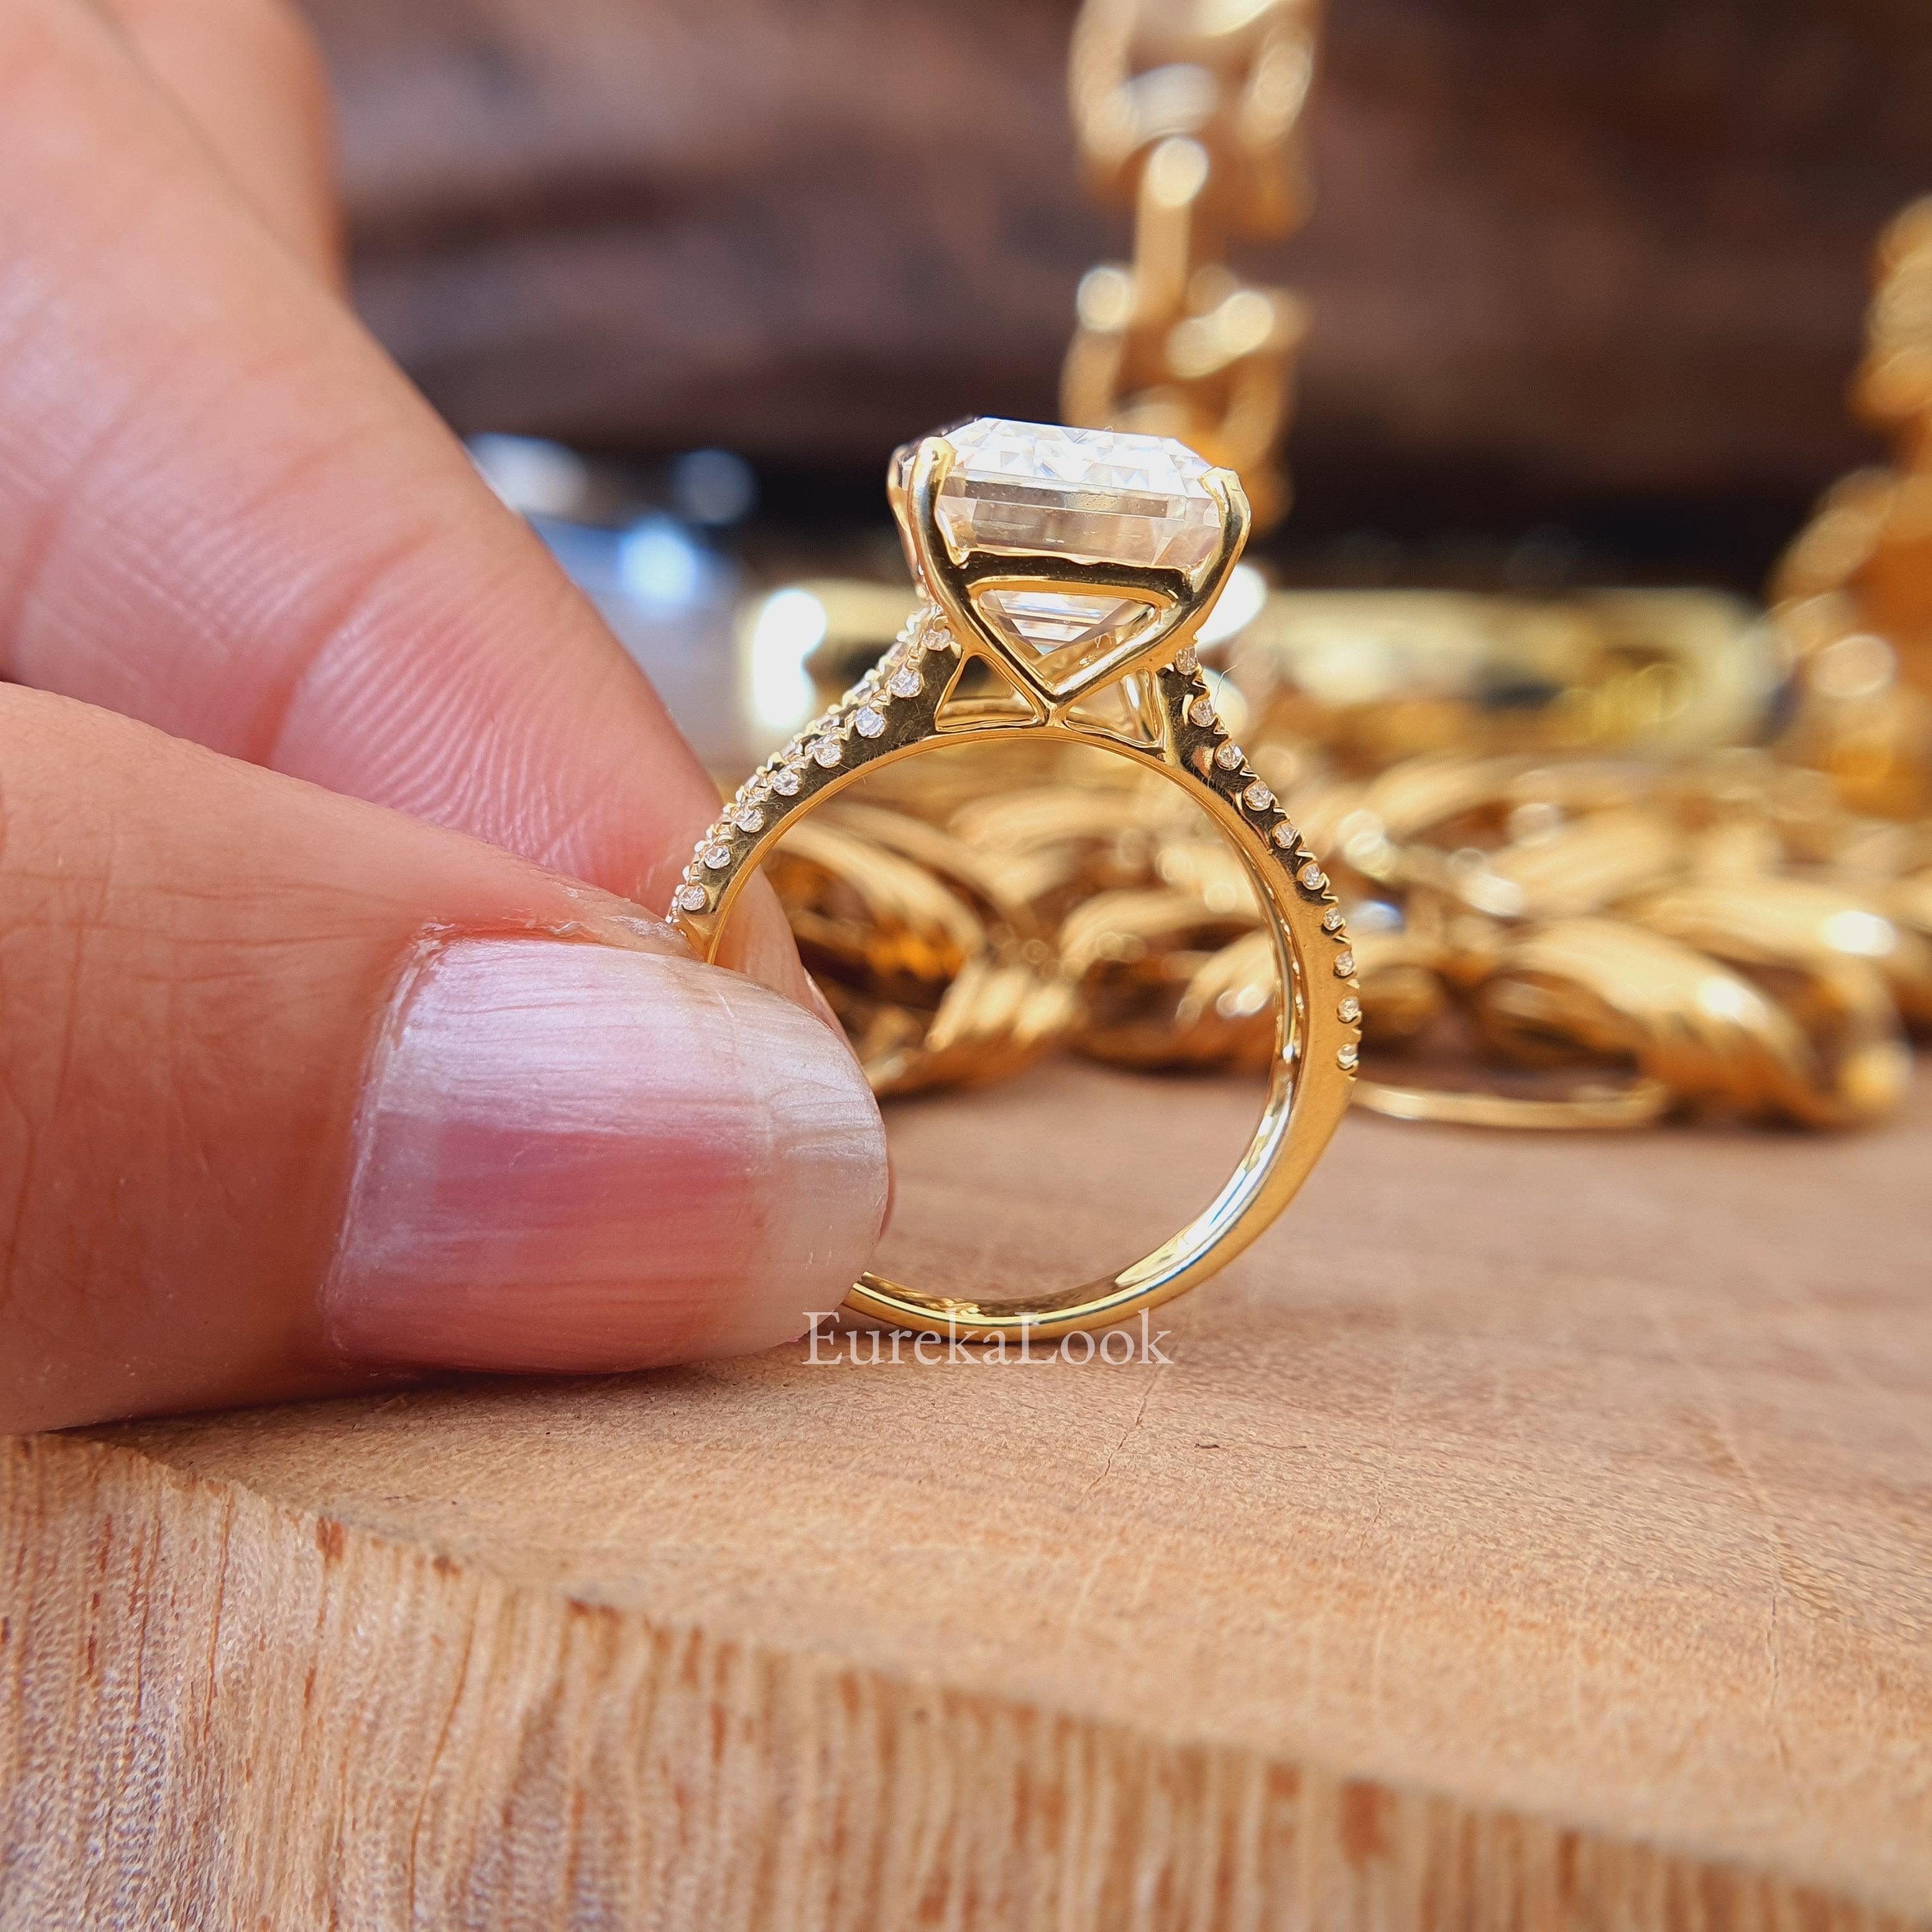 Full Eternity Band Multi Stone Wedding Ring in Moissanite Silver Rings For  Women